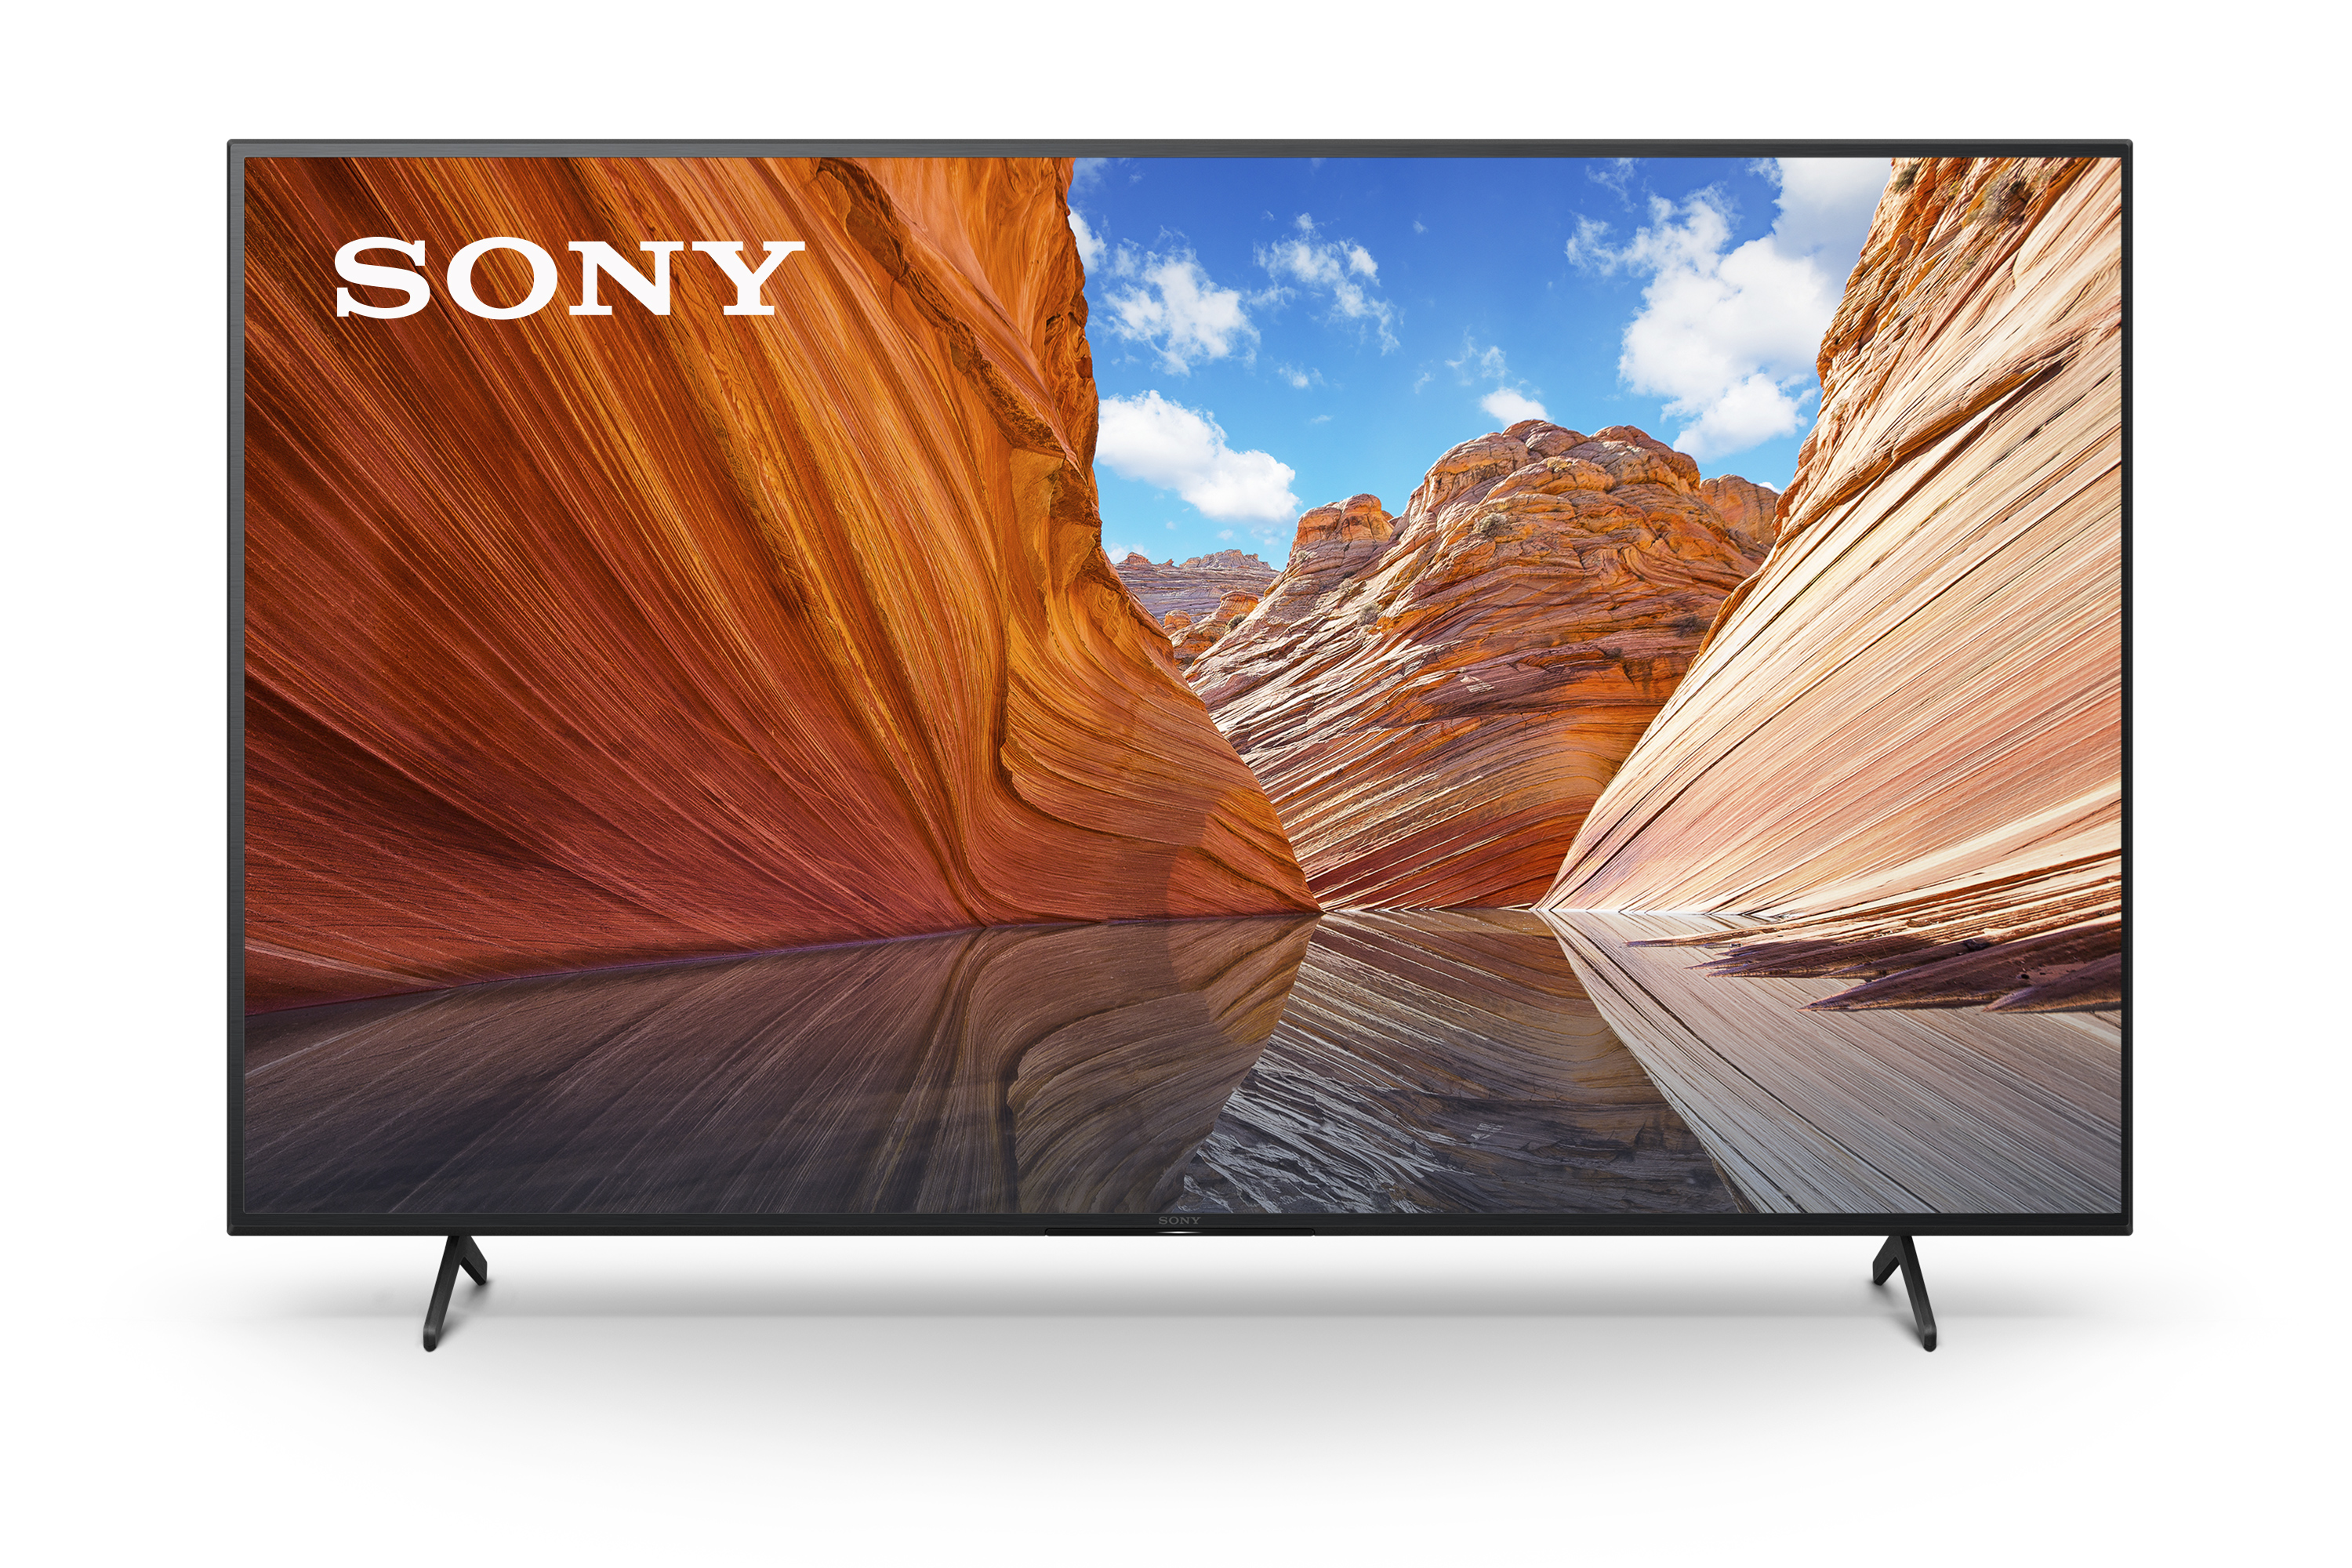 75" Sony X80J 4K UHD HDR Smart TV $998 + free s/h at B&H Photo / Amazon / Walmart